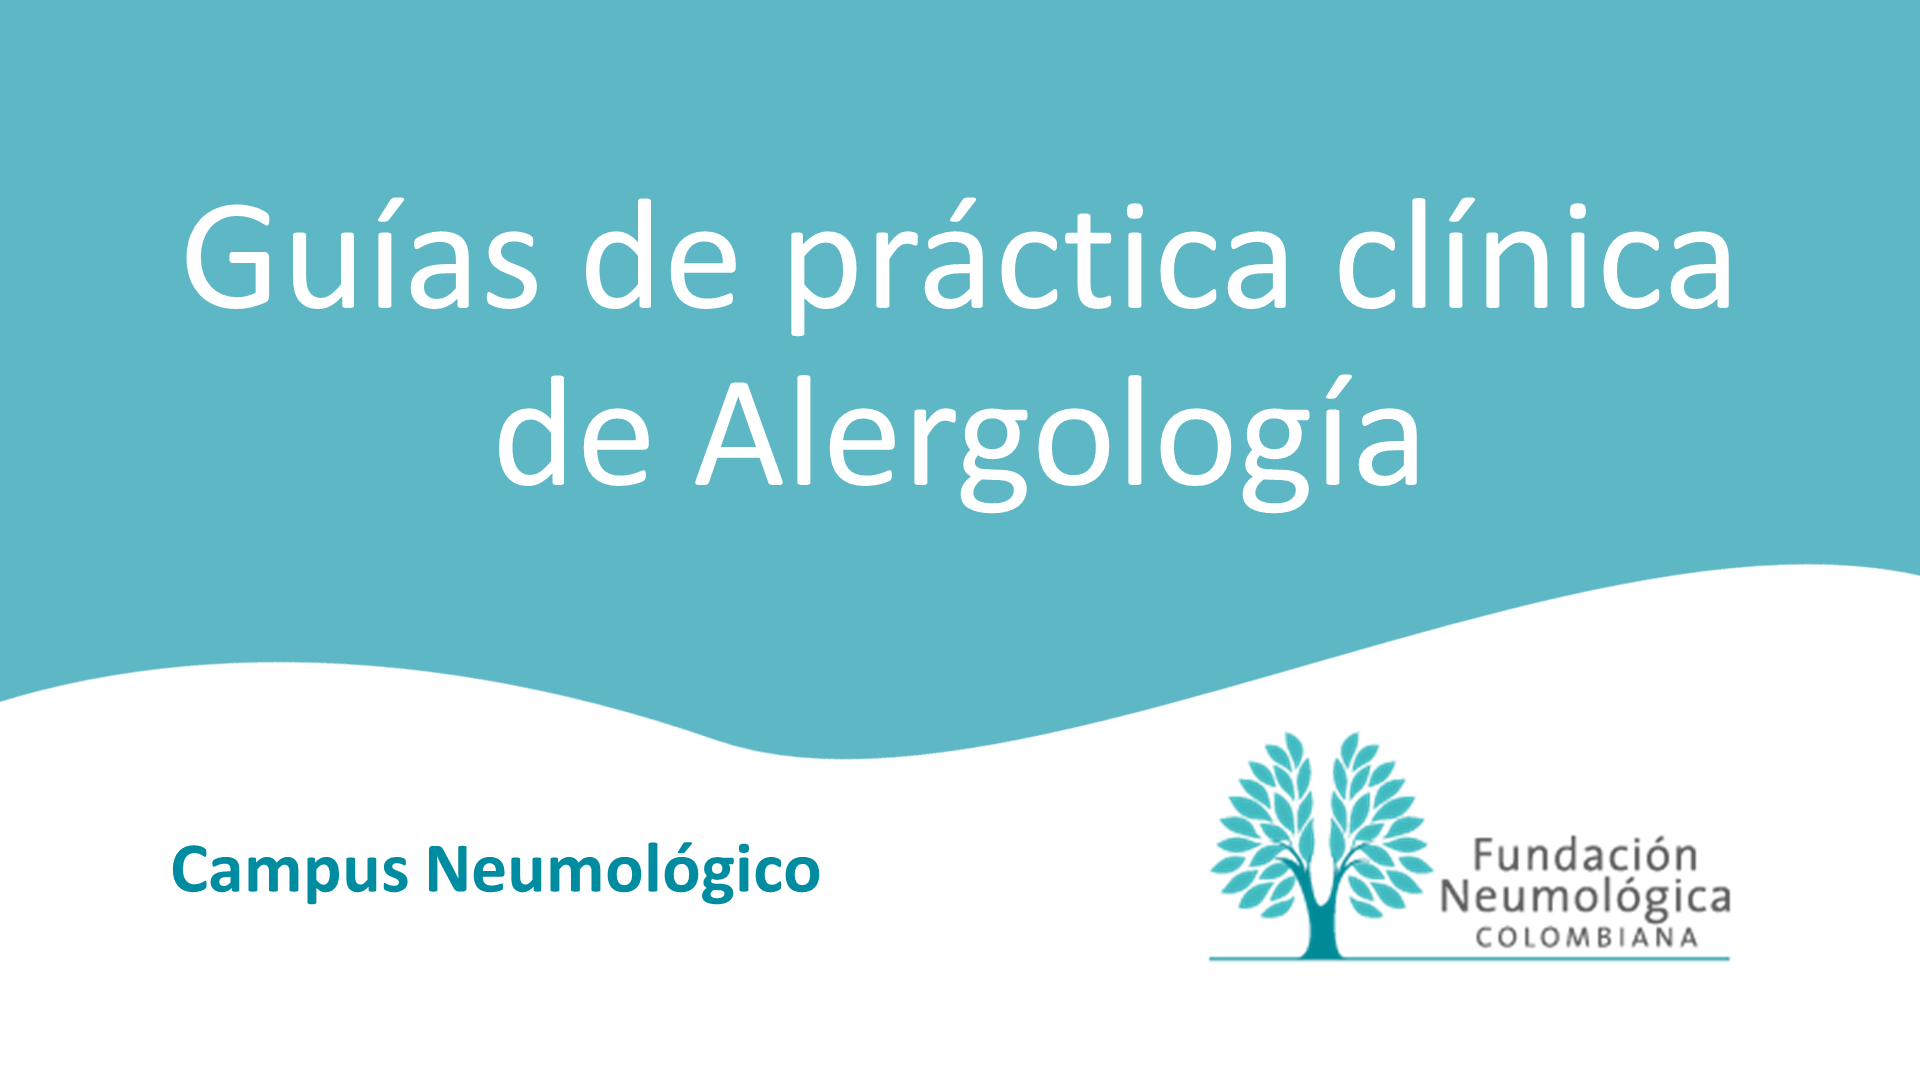 Guías de práctica clínica de Alergología